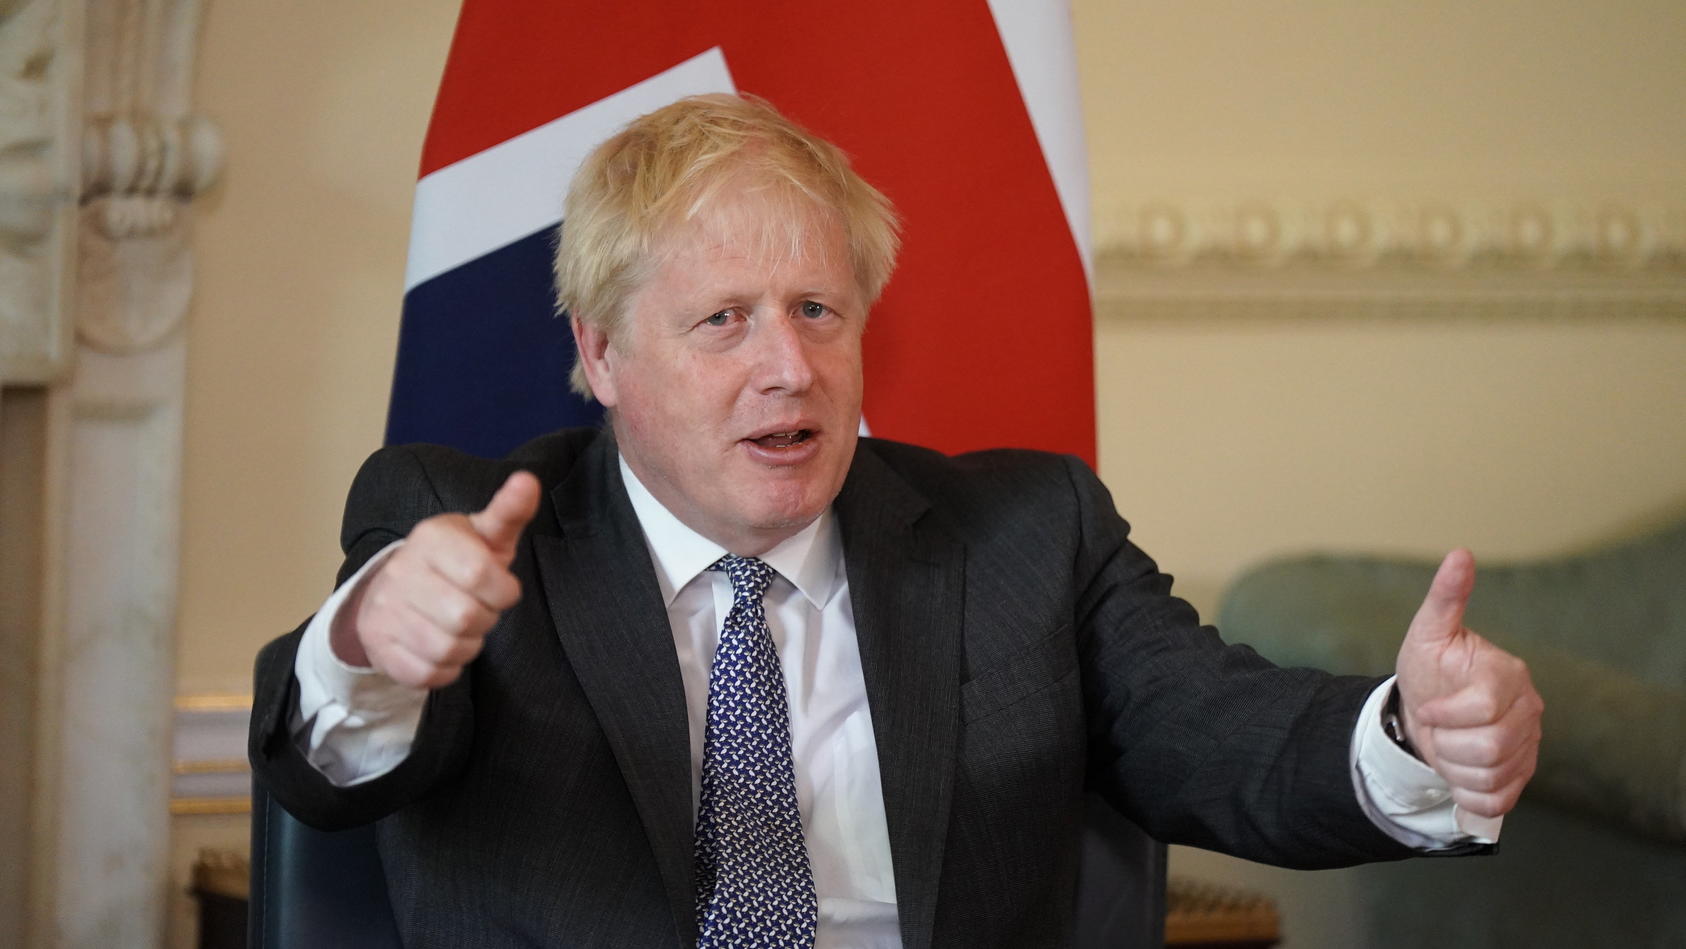 ARCHIV - 13.06.2022, Großbritannien, London: Boris Johnson, damaliger Premierminister von Großbritannien, gestikuliert vor seinem Gespräch mit Portugals Premierminister Costa in der 10 Downing Street. (zu dpa "Ex-Premier Johnson ruft Deutschland zur 